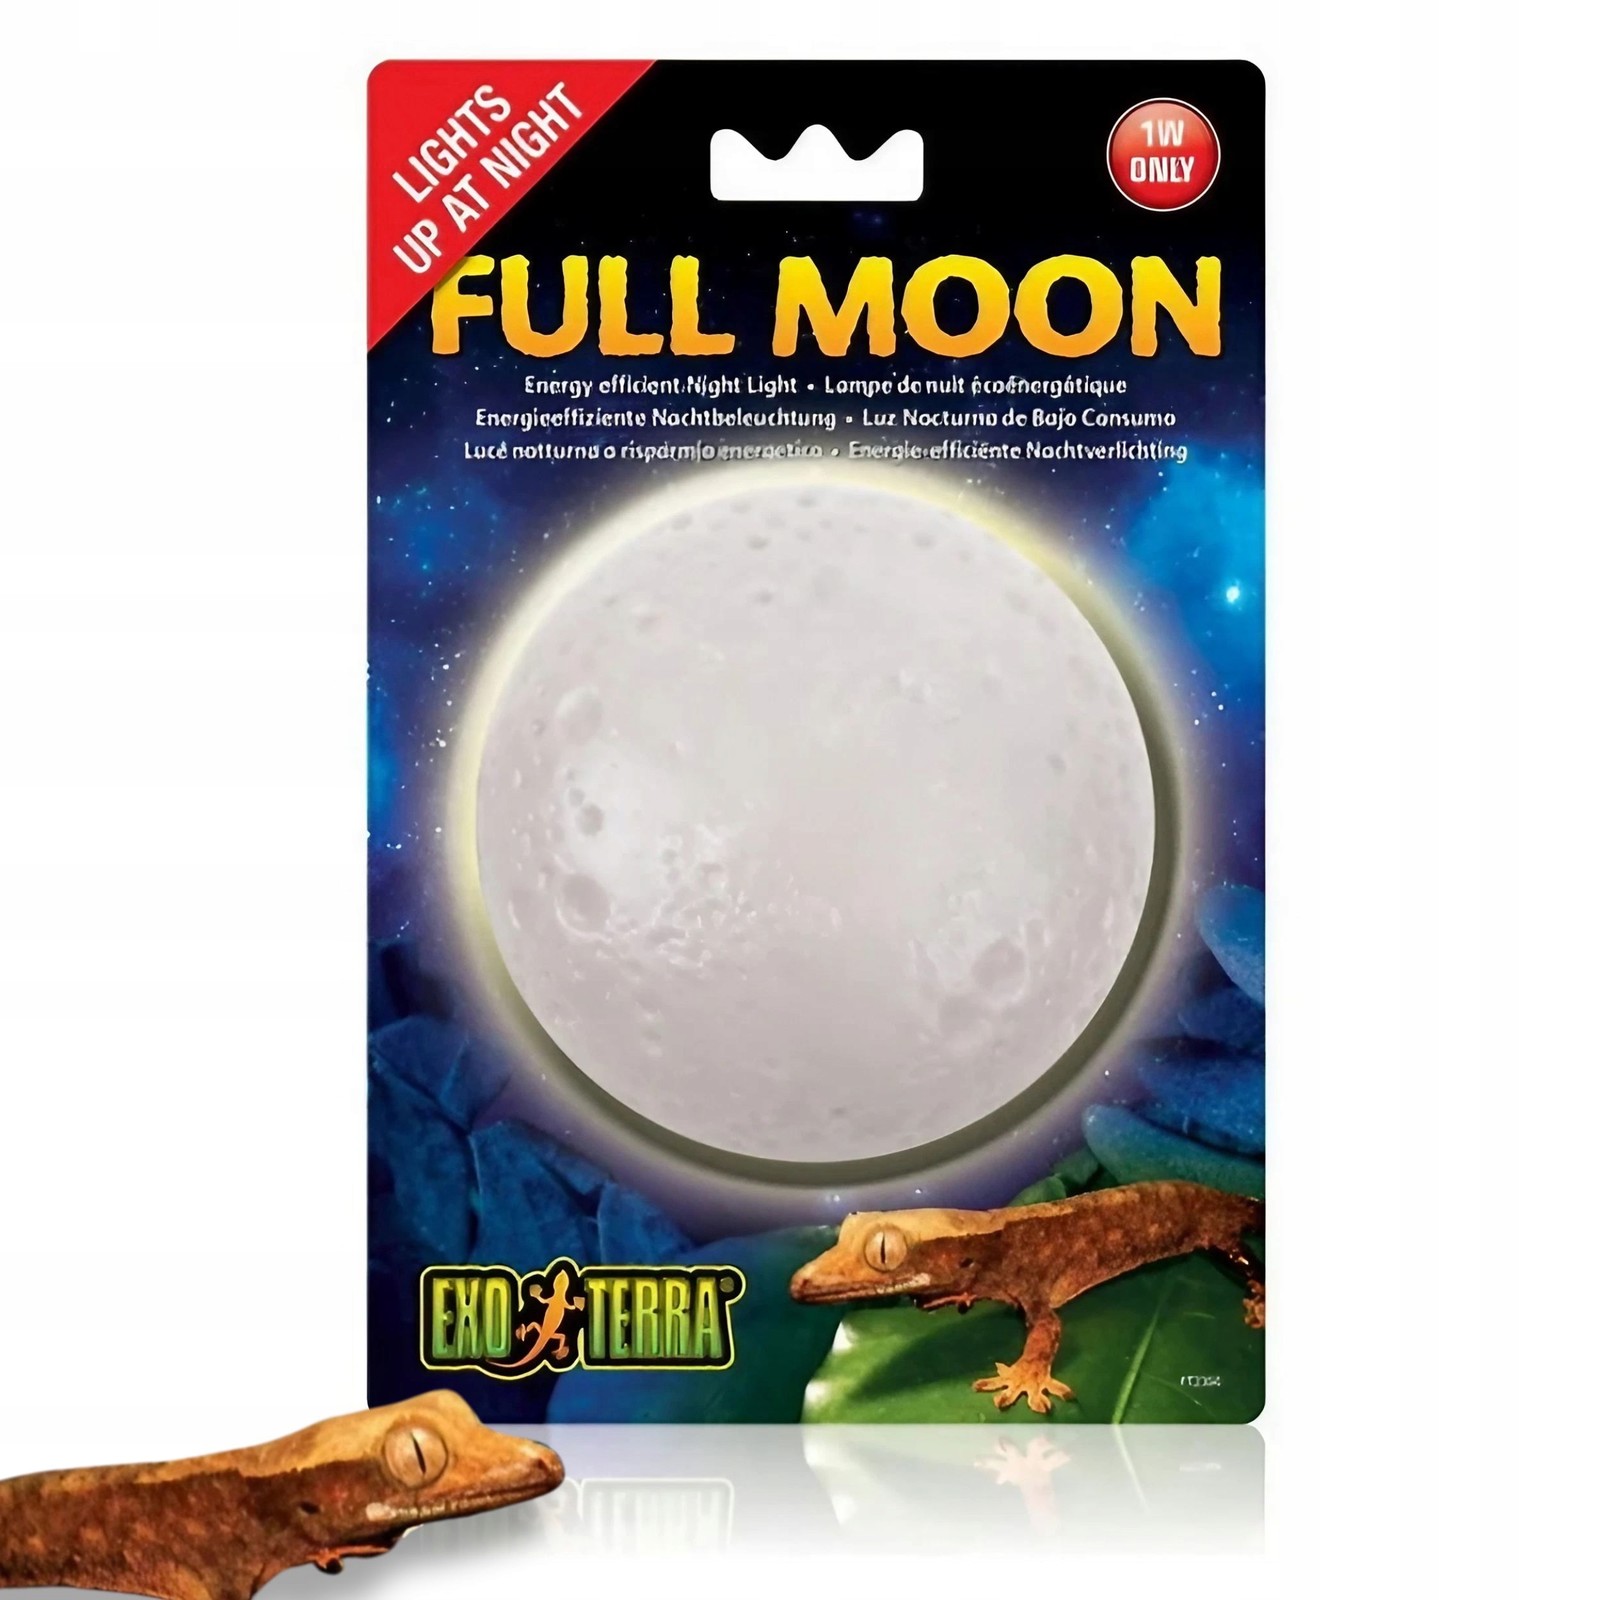 Exo-Terra Full Moon noční automatické světlo Měsíc do 1W terária